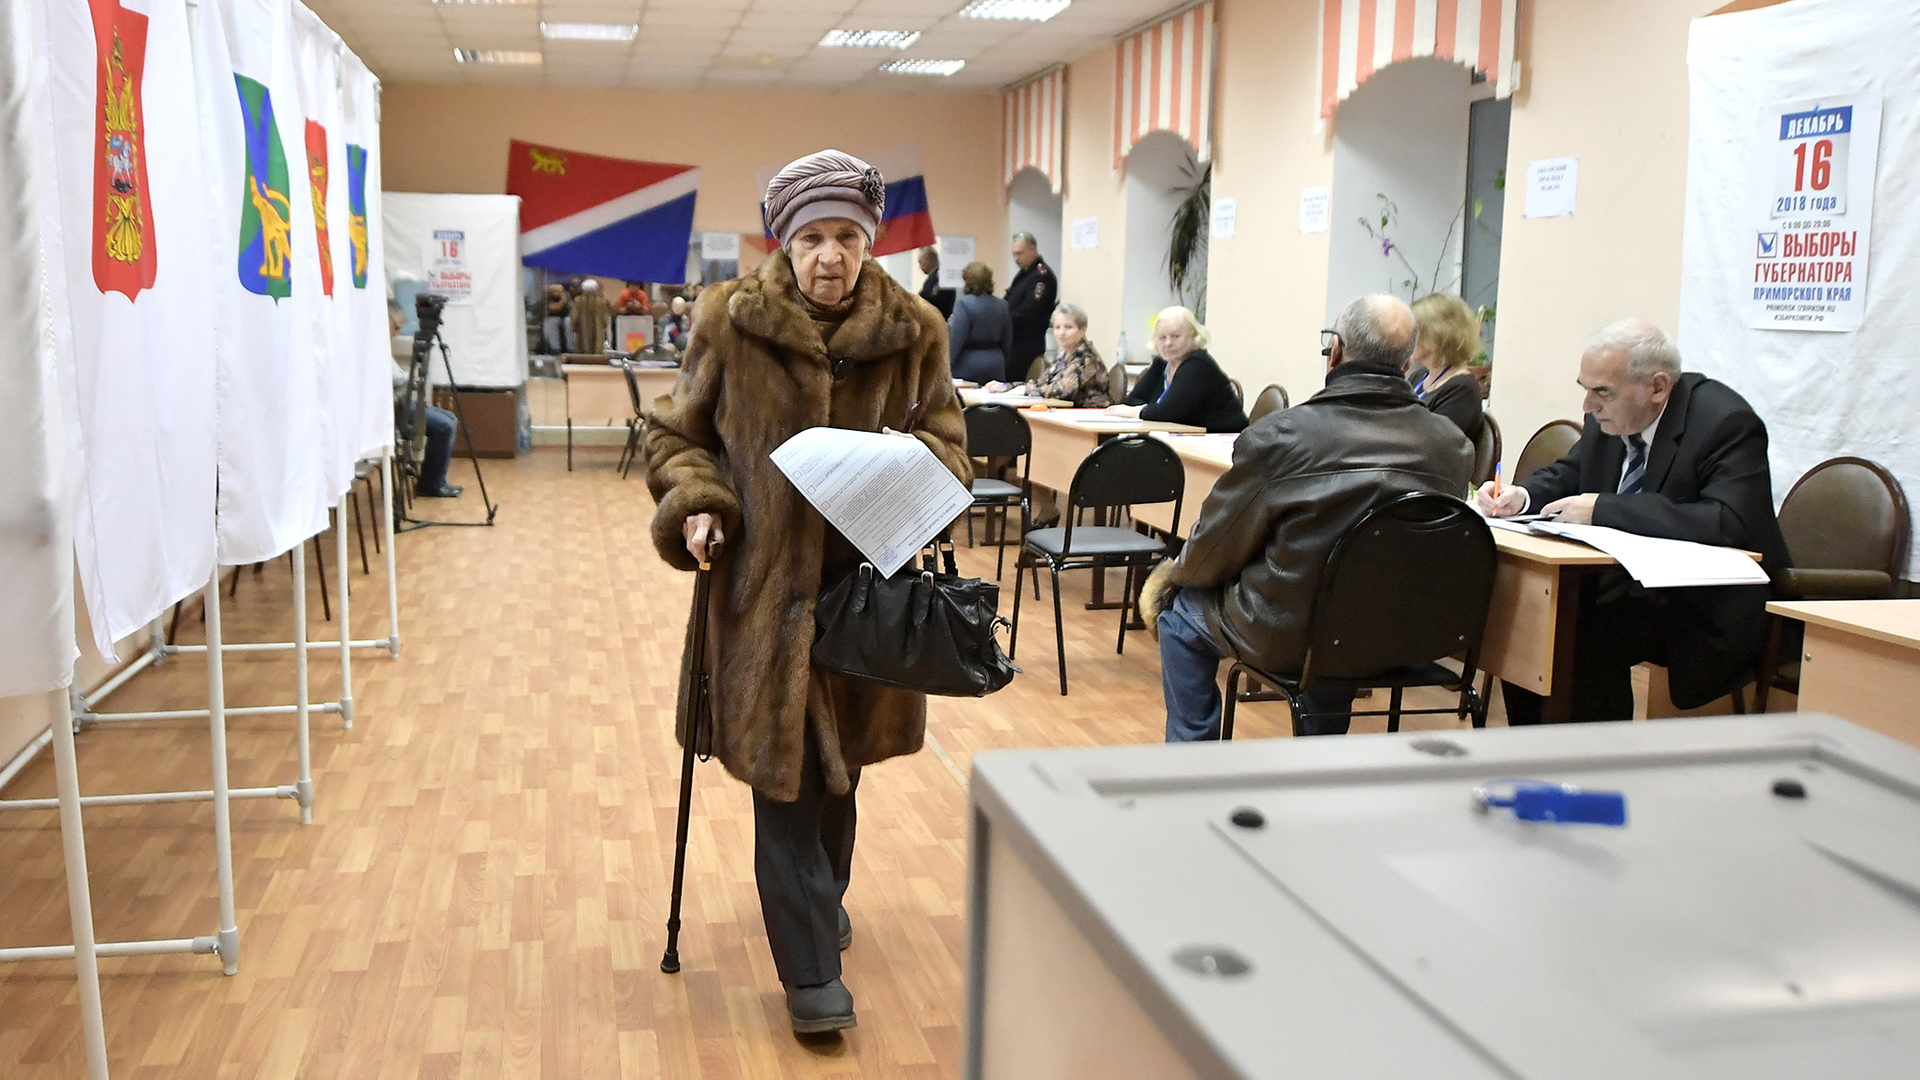 Вбросы на выборах губернатора Приморского края 2018